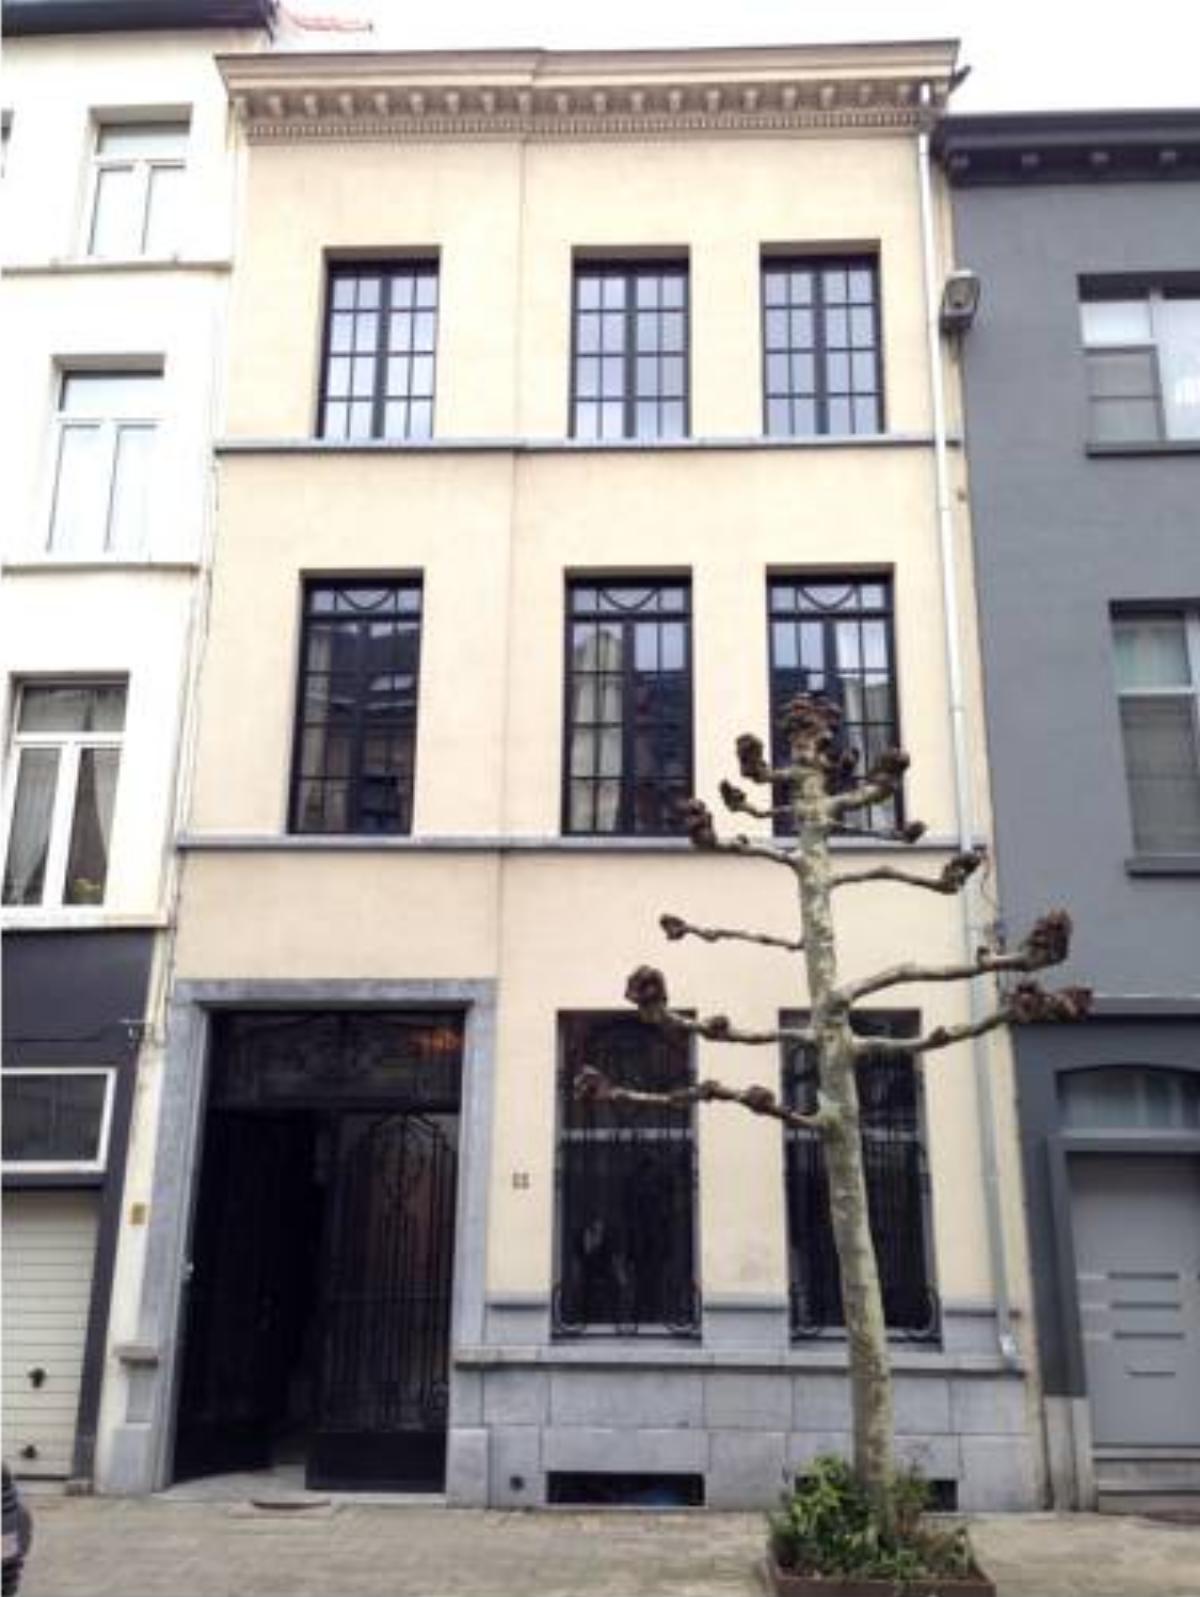 Apartment Number 22 Antwerp Hotel Antwerp Belgium